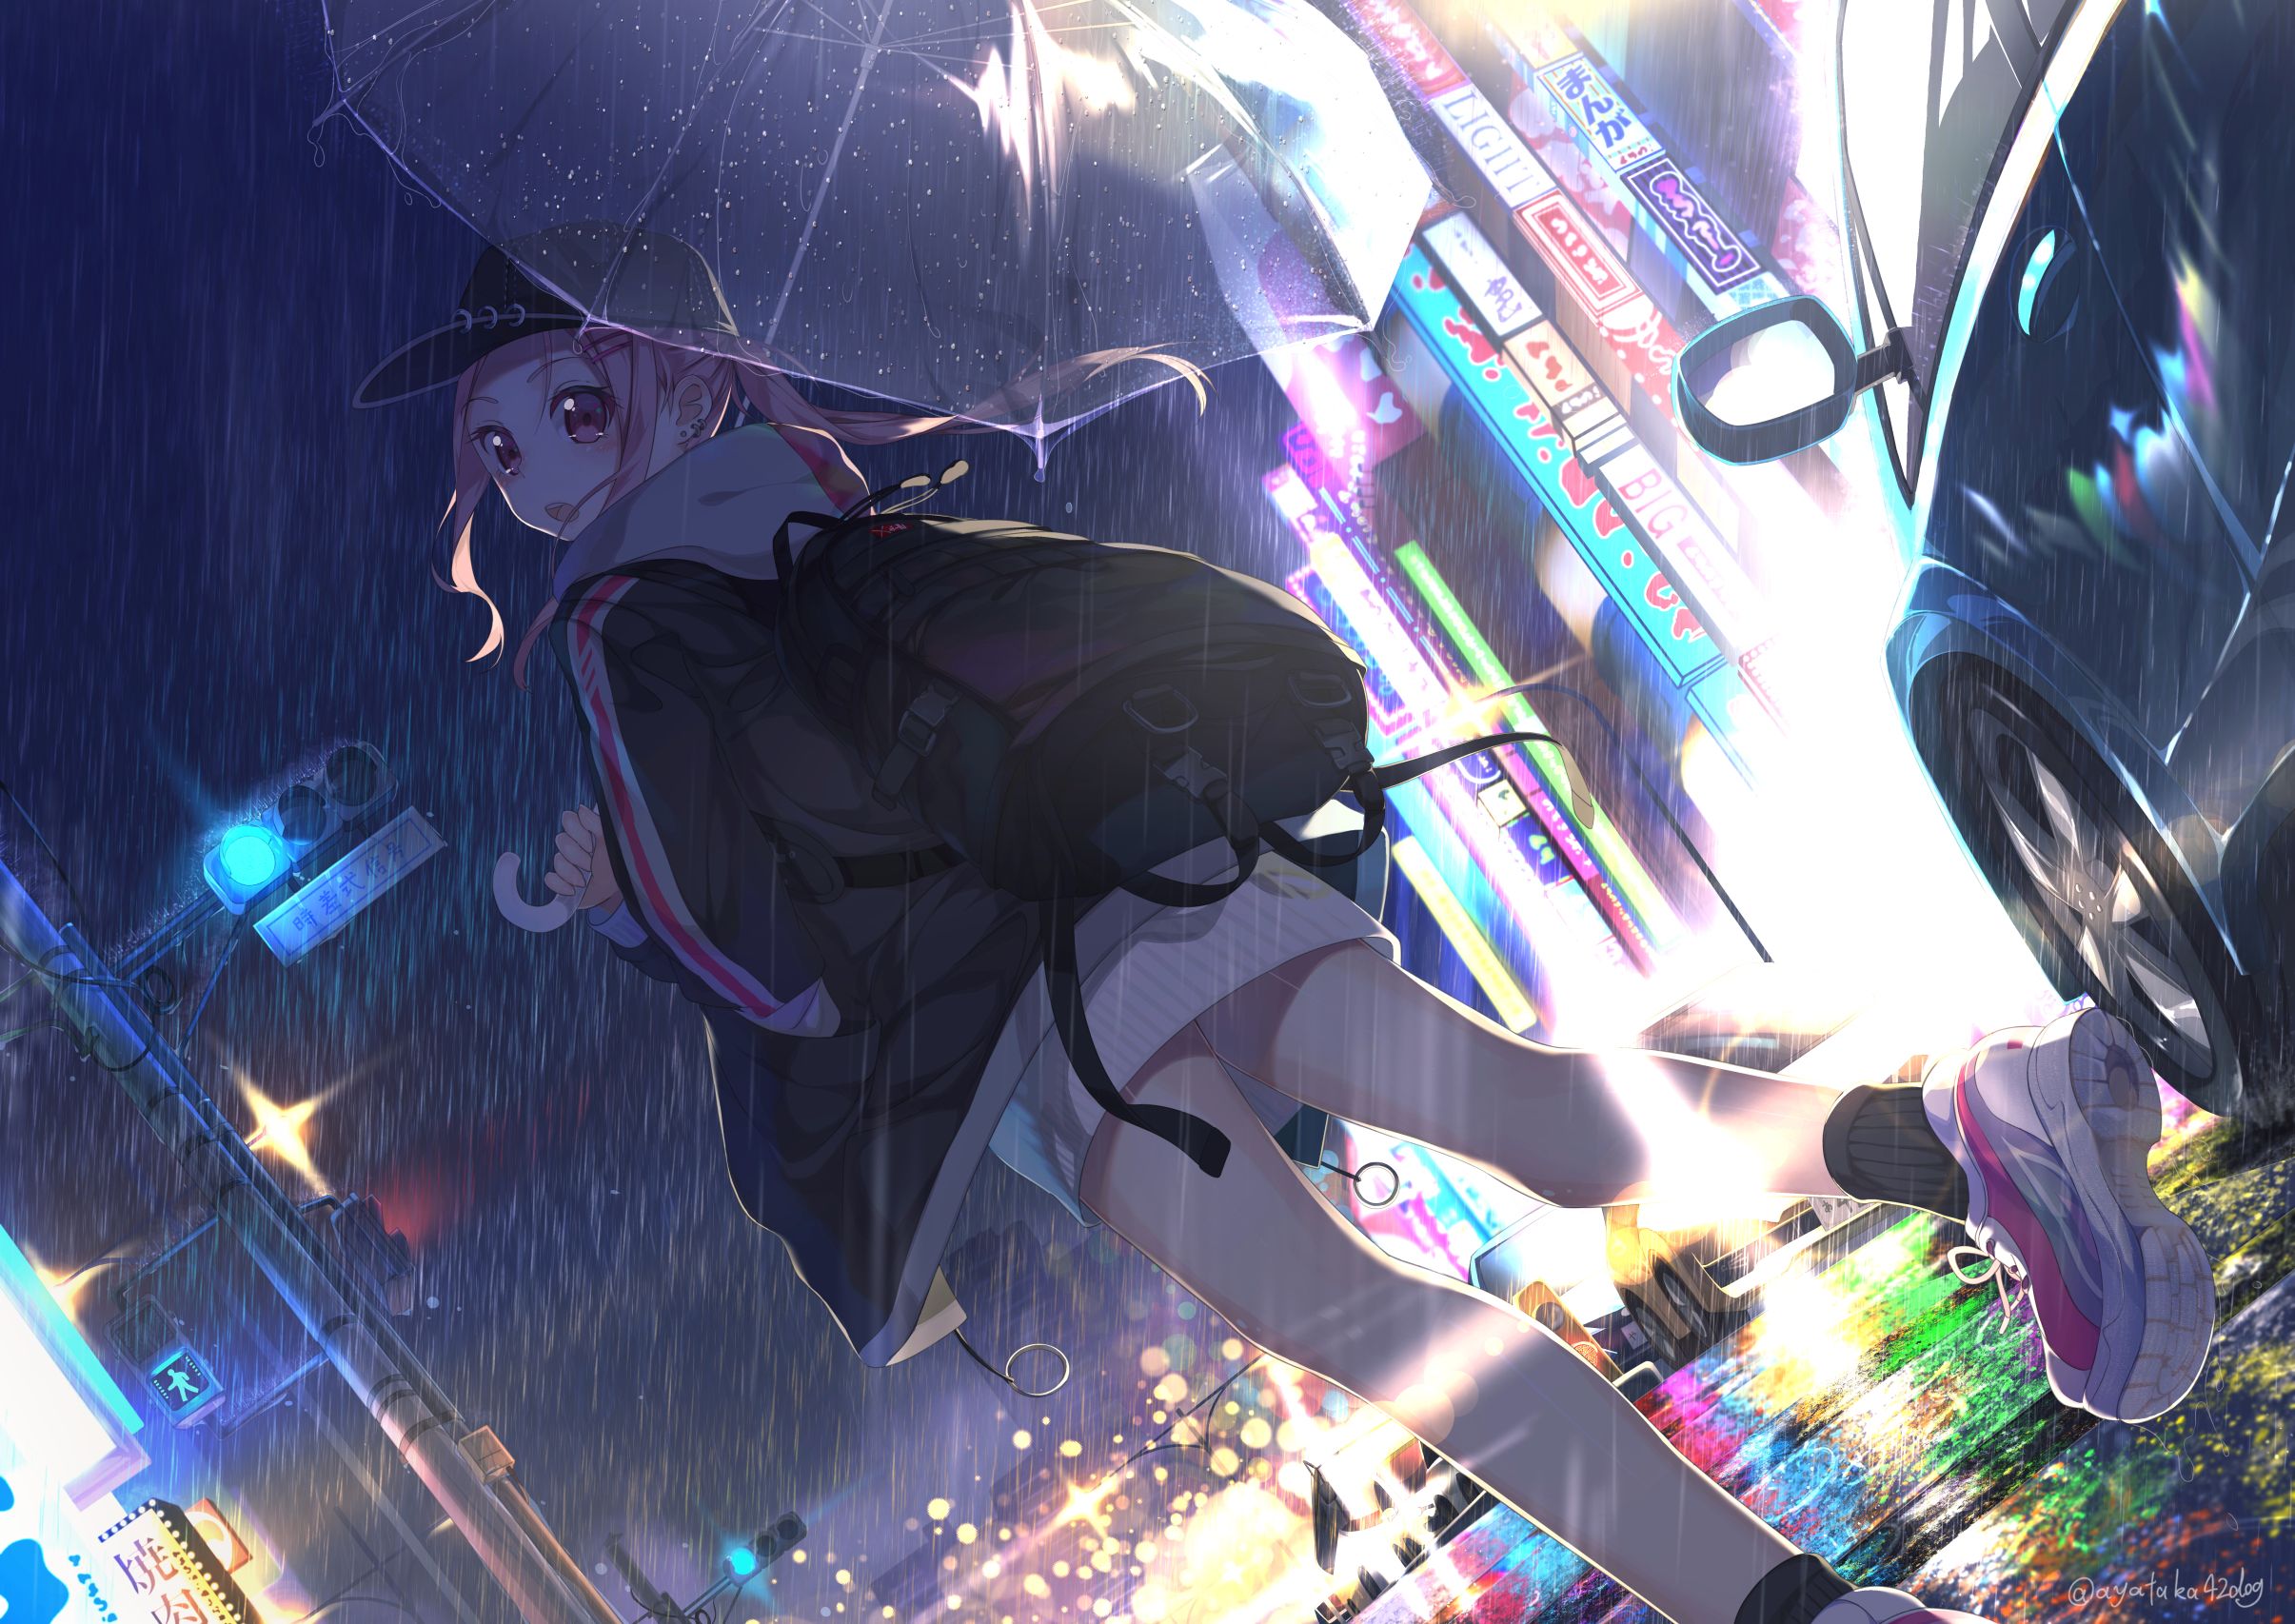 Anime Girl with Umbrella In Rain 1080P Laptop Full HD